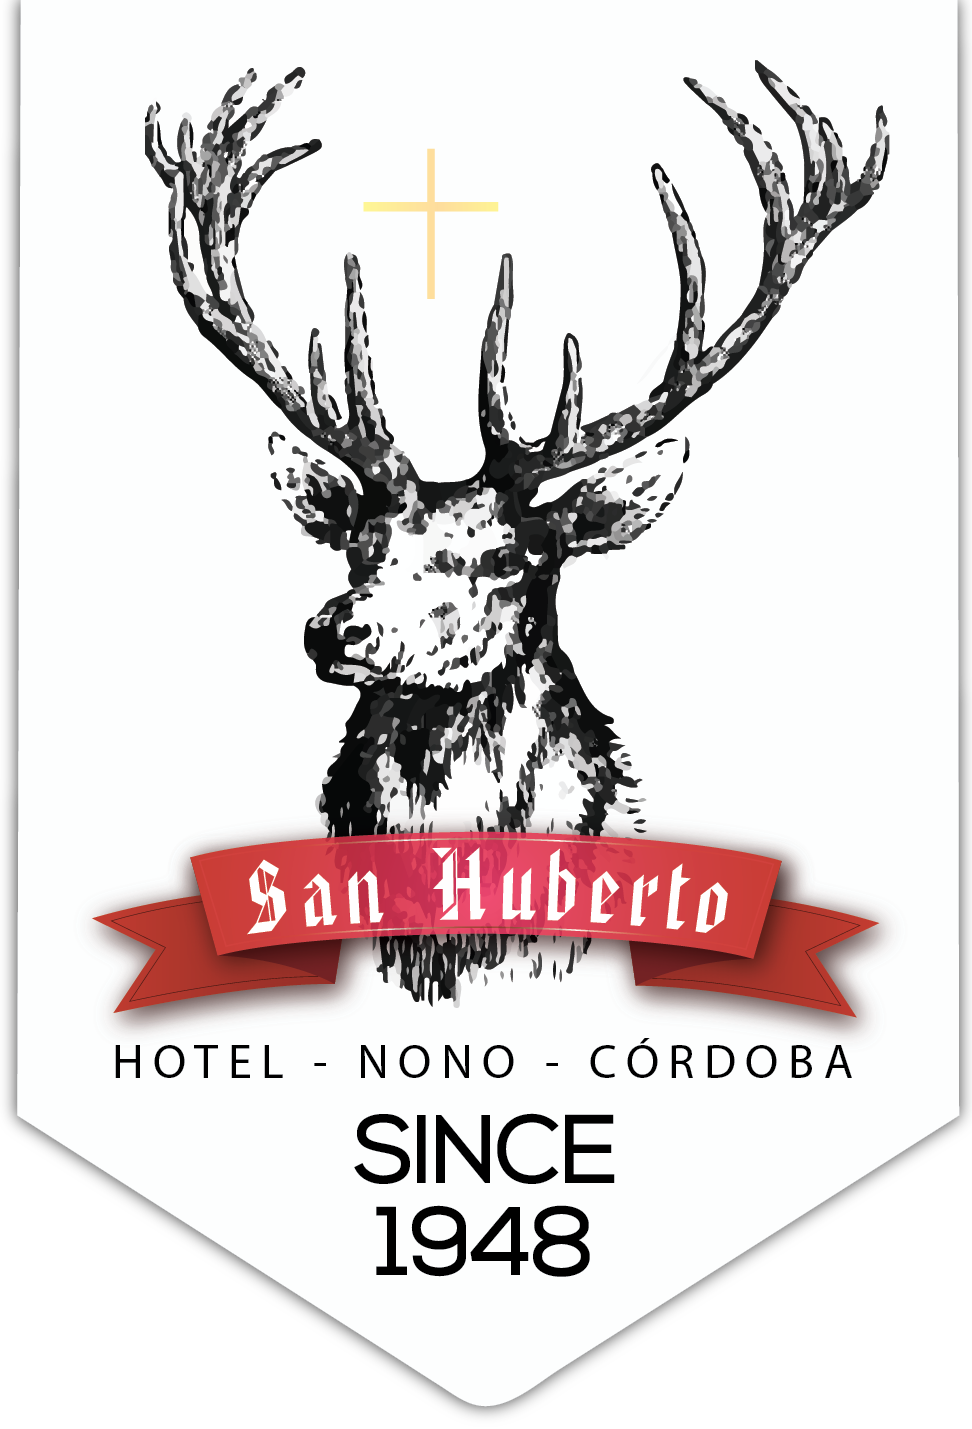 Hotel San Huberto Tenis – NONO